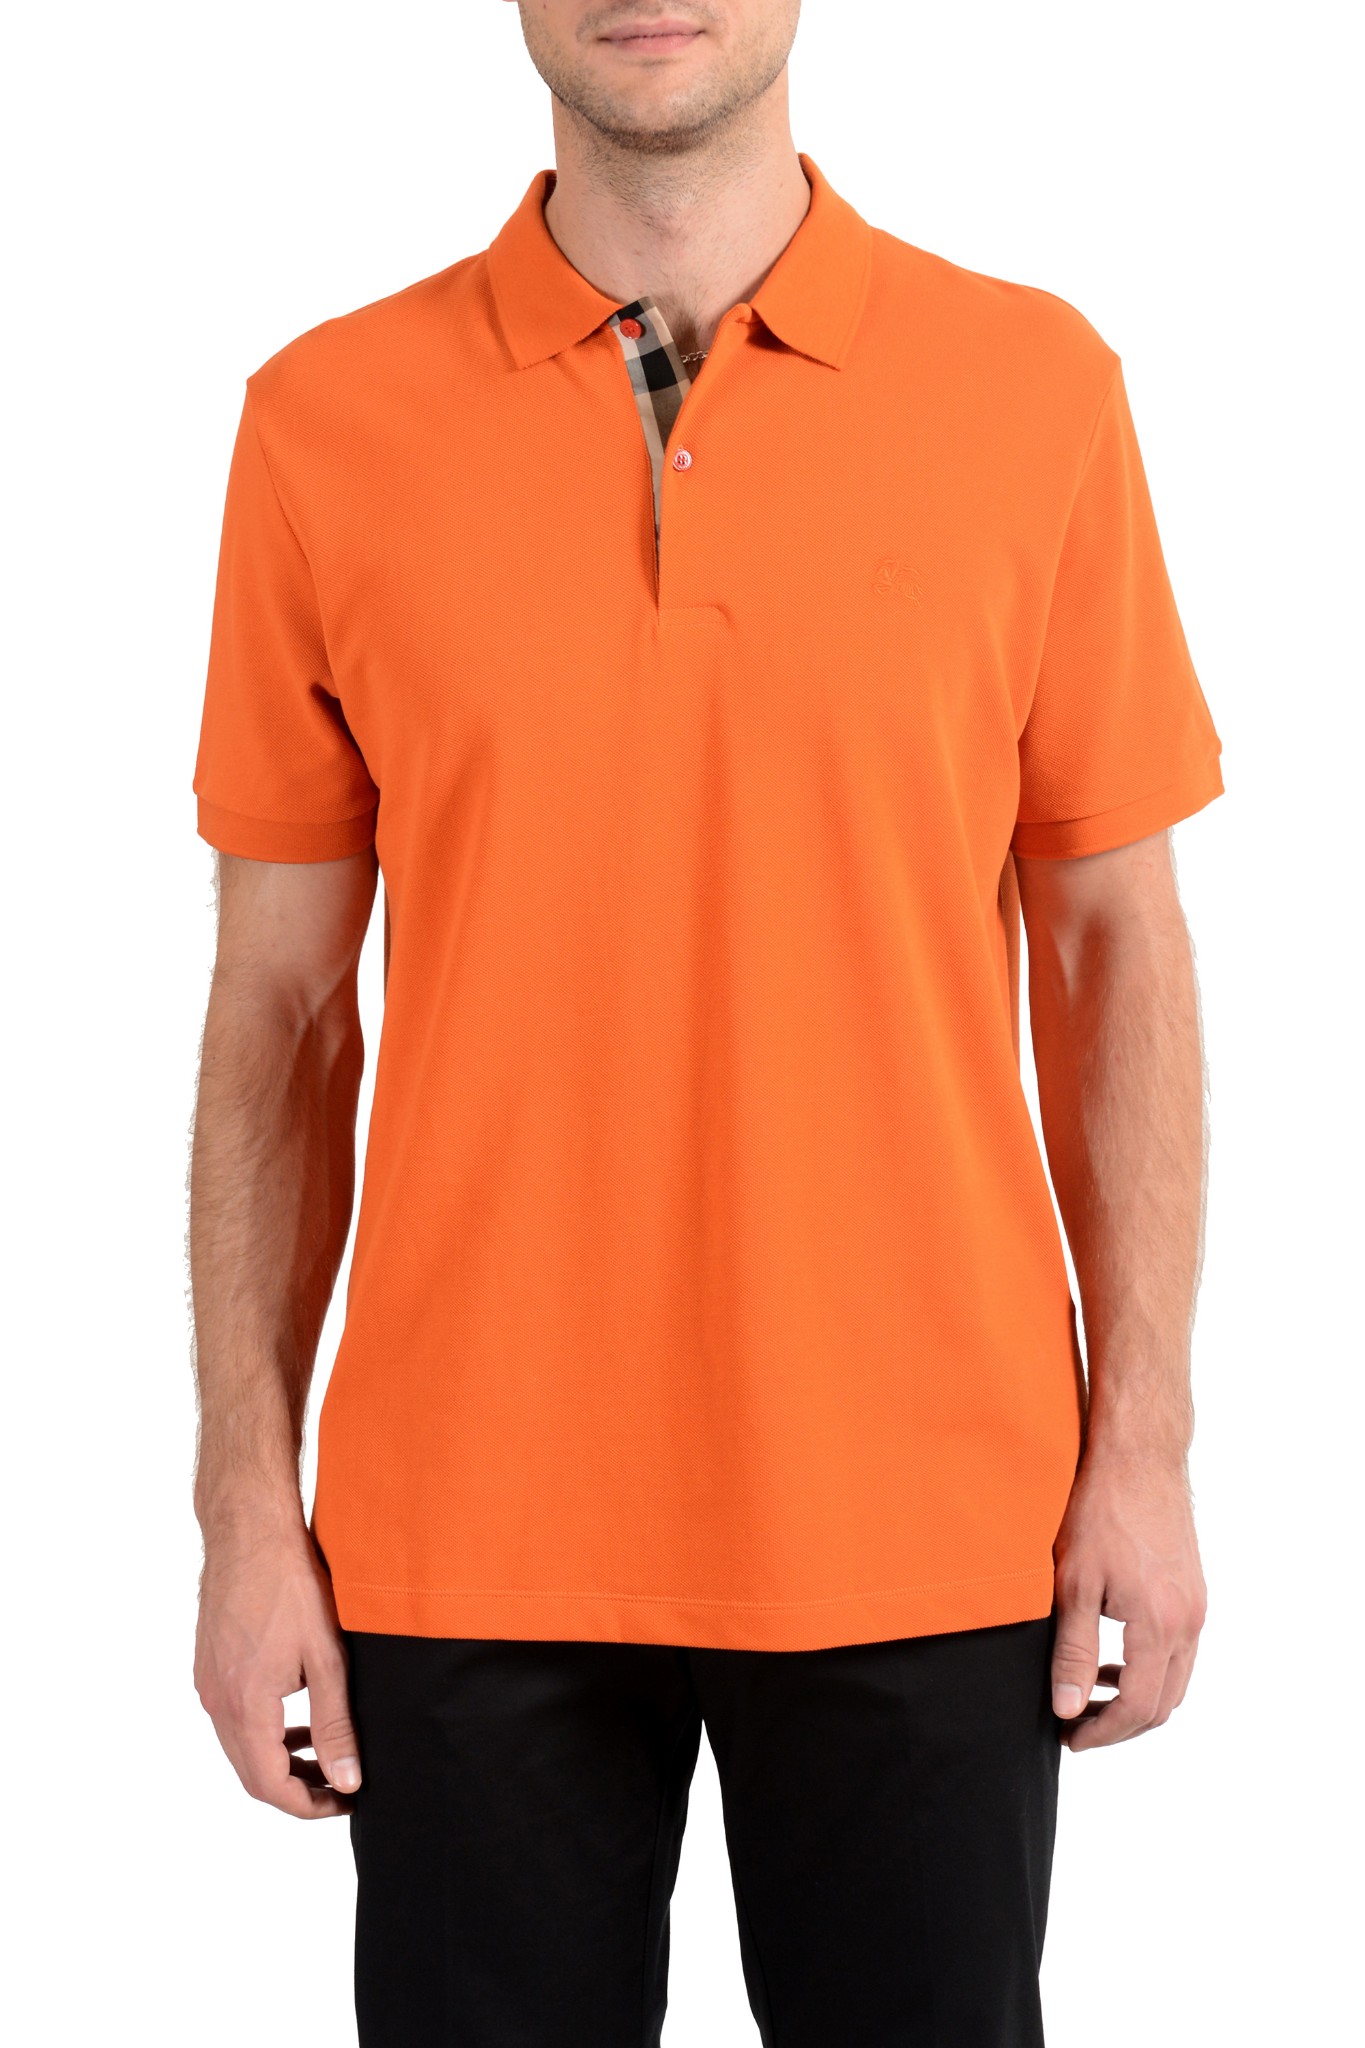 Orange Short Sleeve Polo Shirt US XL 